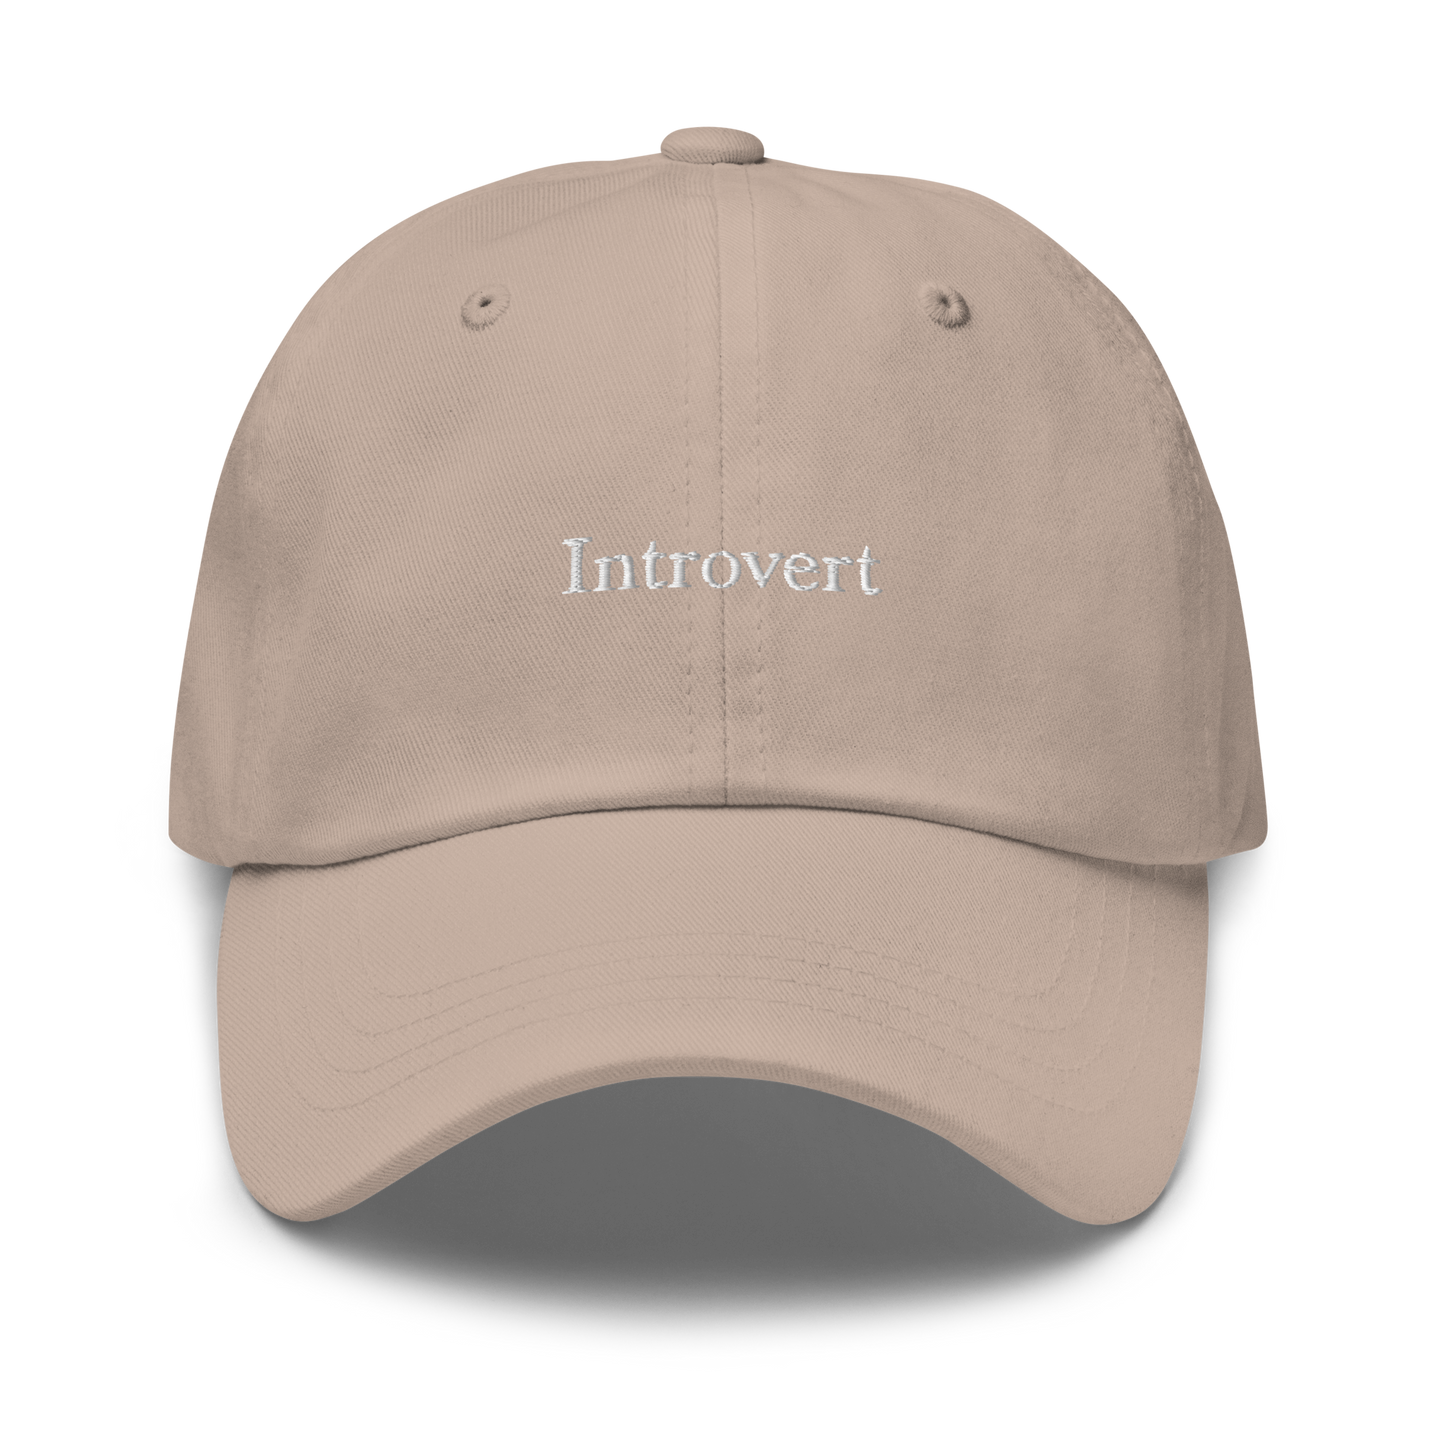 Introvert Baseball Cap